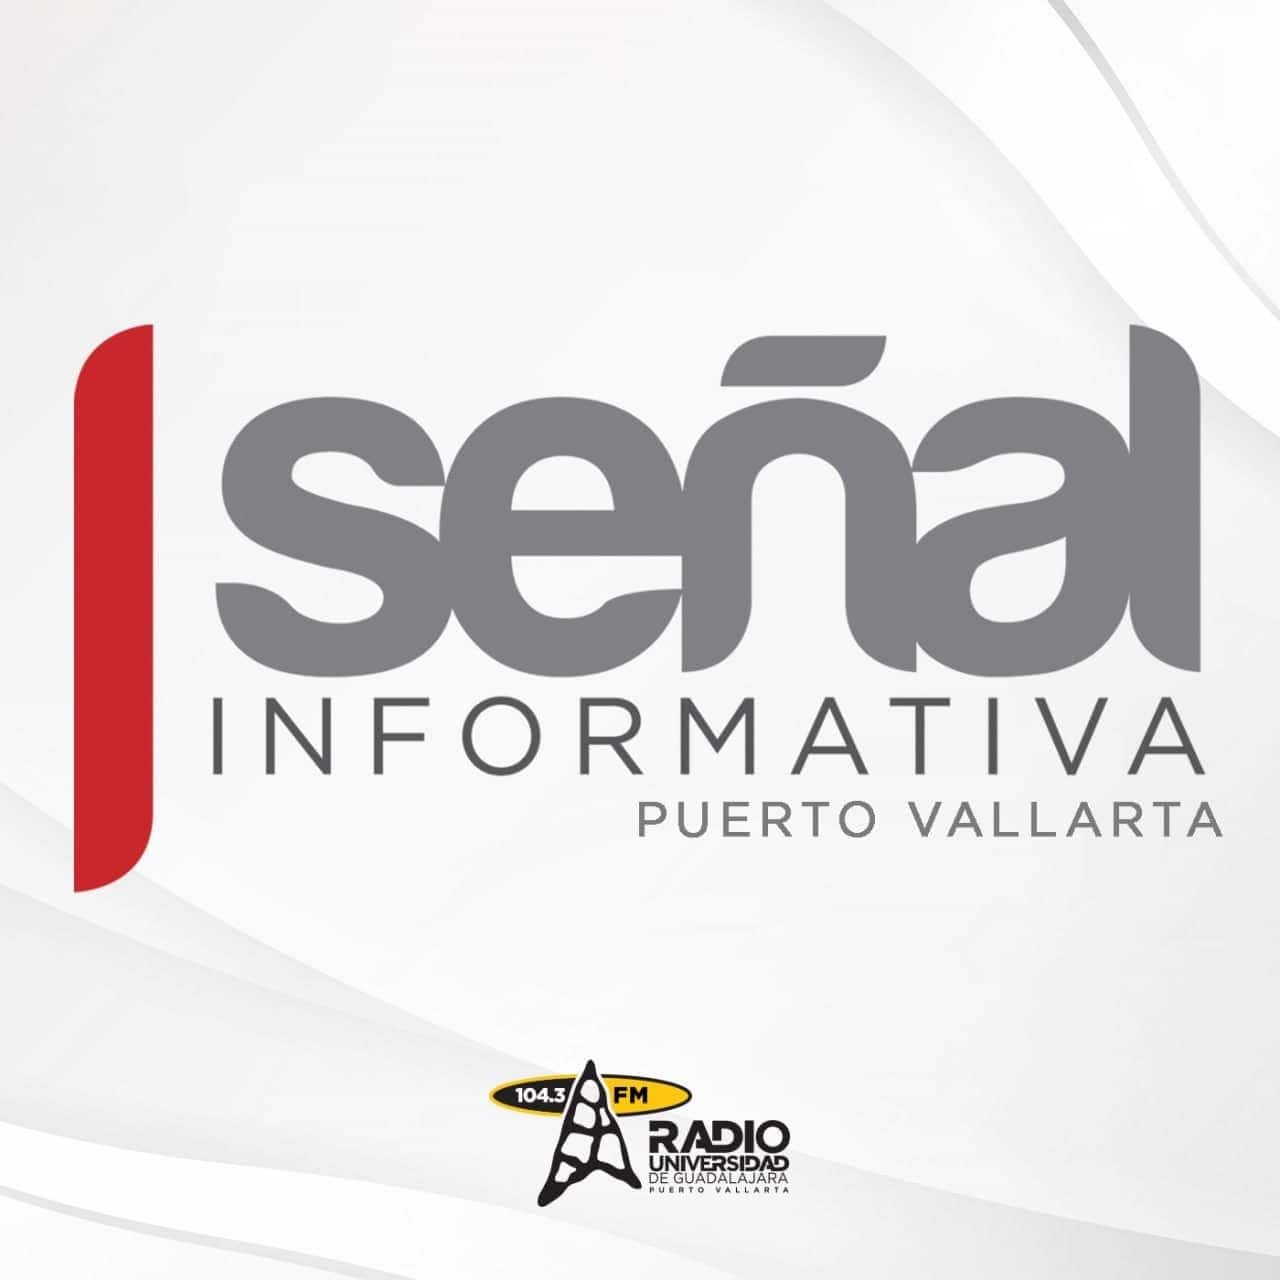 Señal Informativa Puerto Vallarta - 12 de Febrero del 2024